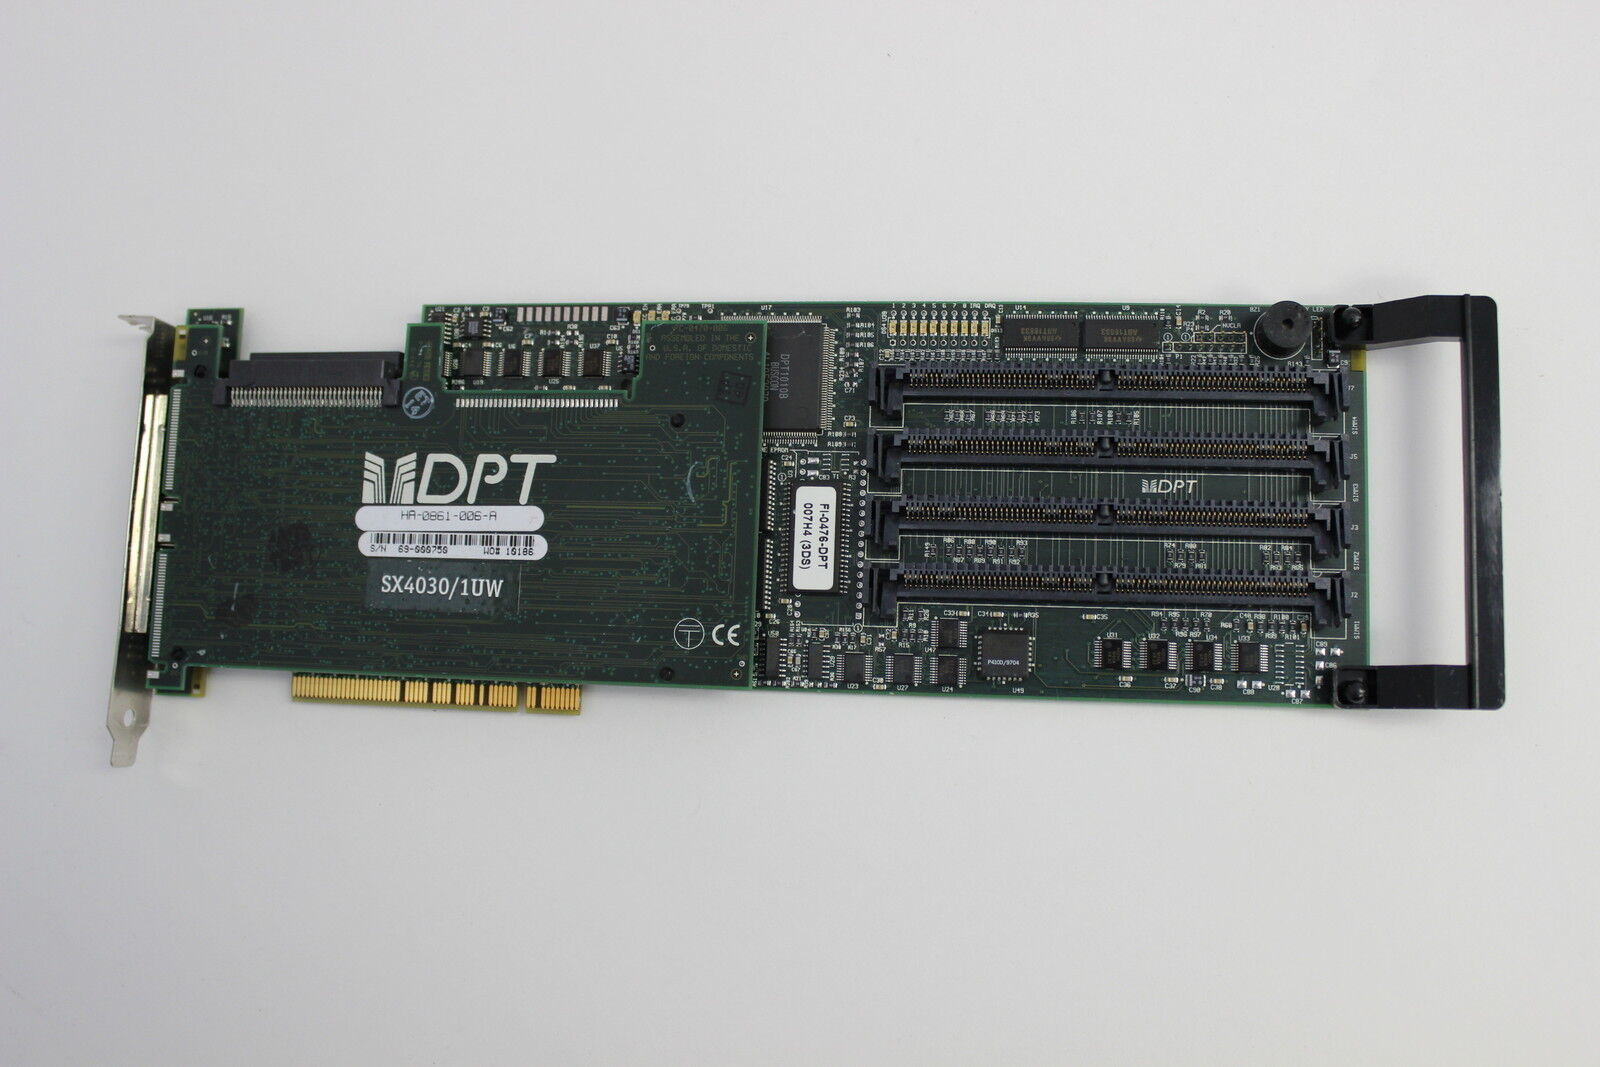 DPT PM3334UW PCI RAID CONTROLLER HA-0851-006-A WITH SX4030/1UW BD HA-0861-006A-A